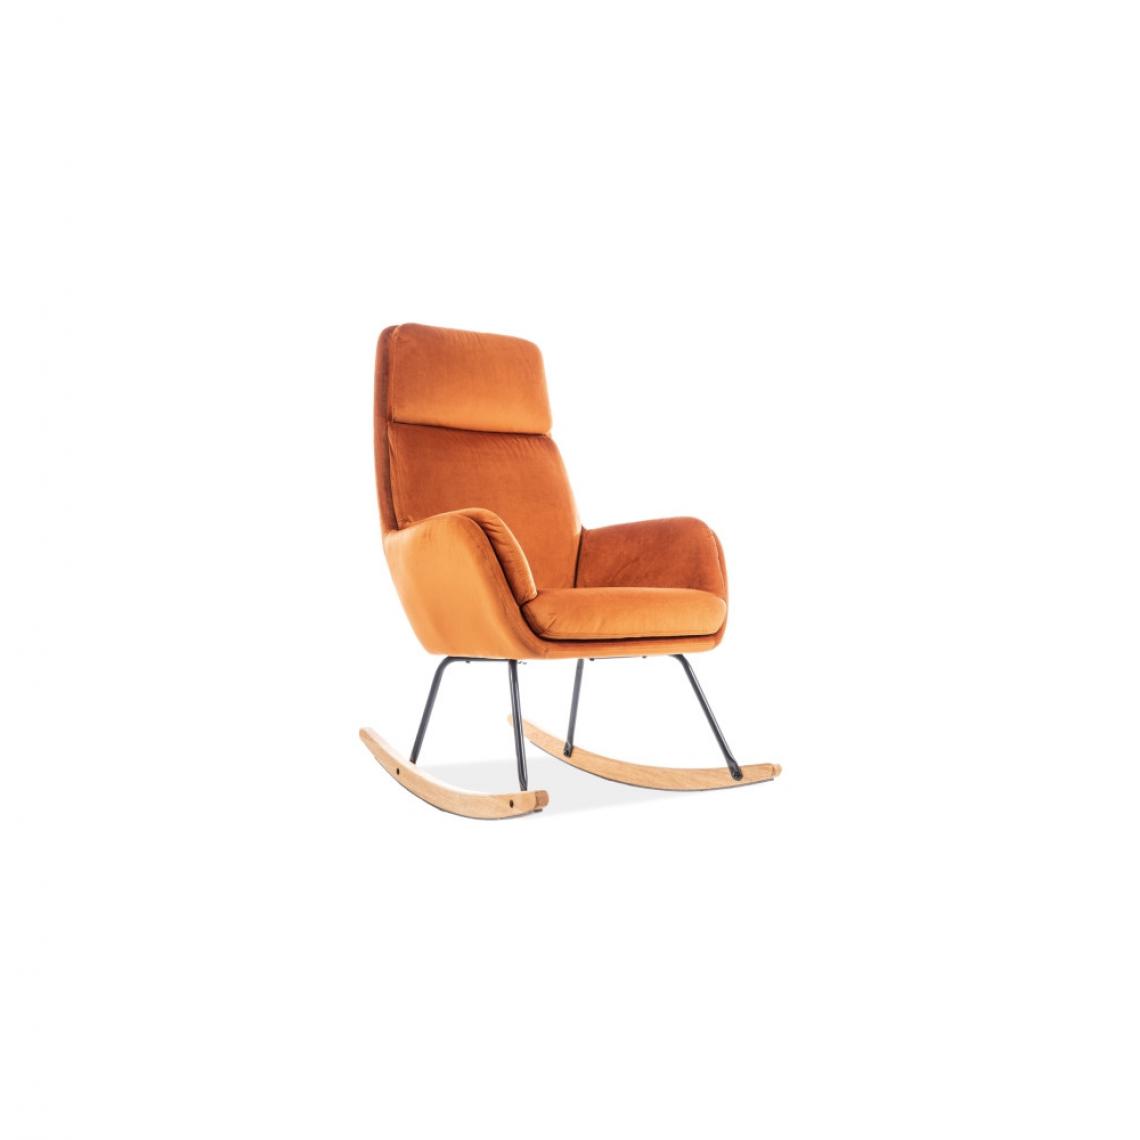 Ac-Deco - Chaise berçante - Hoover - L 70 x l 49 x H 106 cm - Orange - Chaises